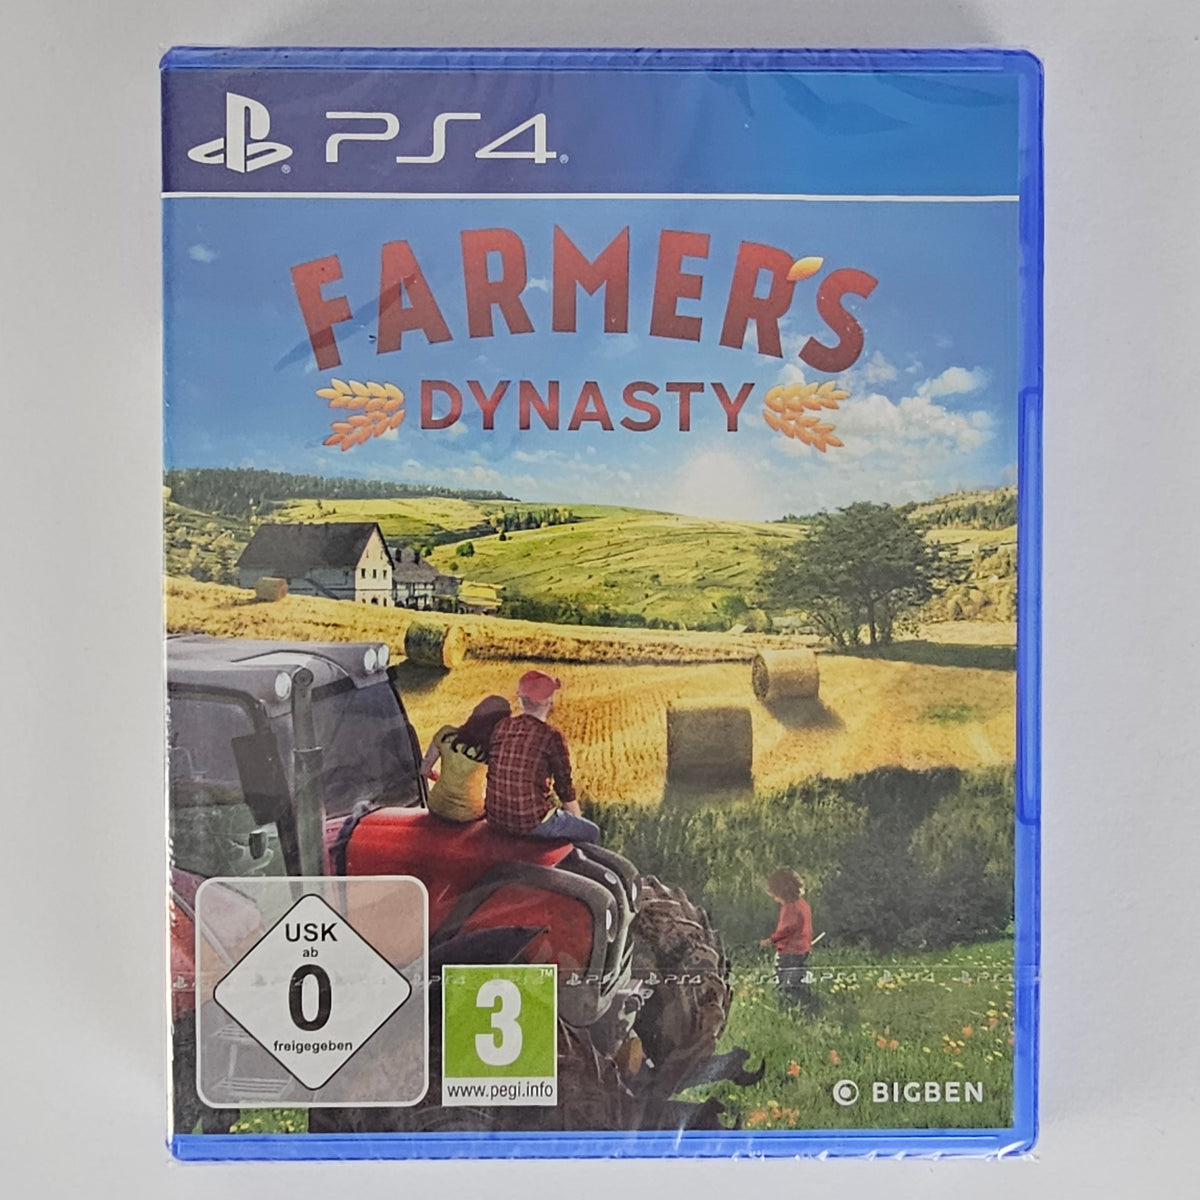 Farmers Dynasty Playstation 4 [PS4]